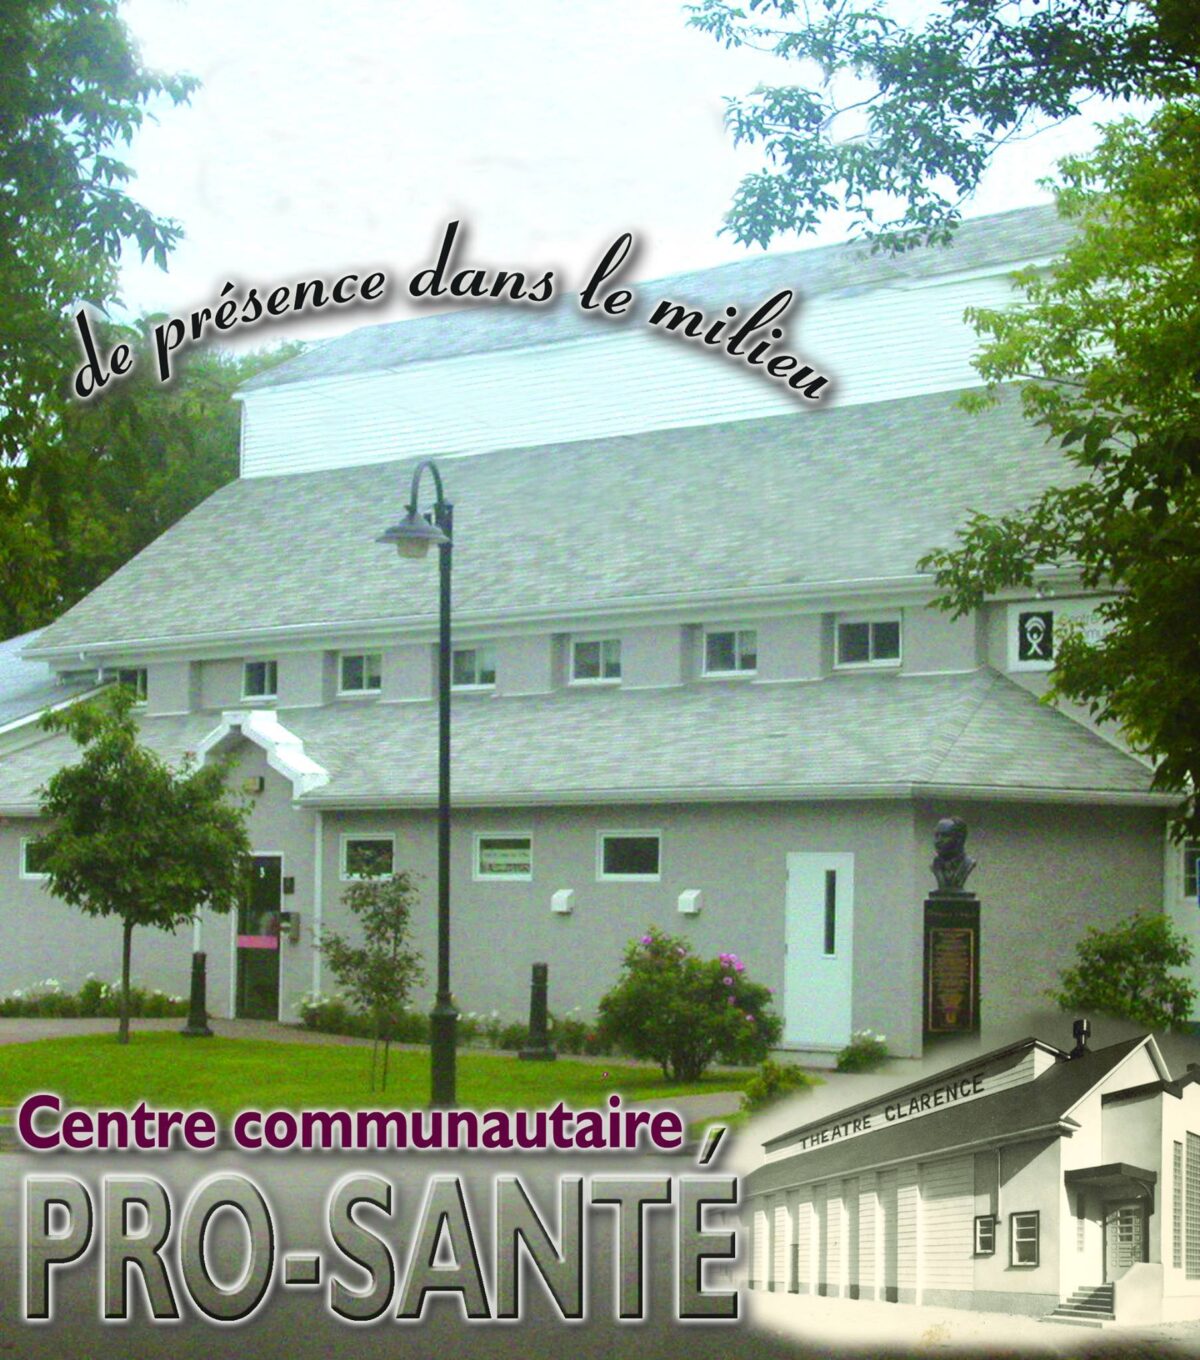 Voici les bons coups du centre communautaire Pro-santé de Baie-Saint-Paul!